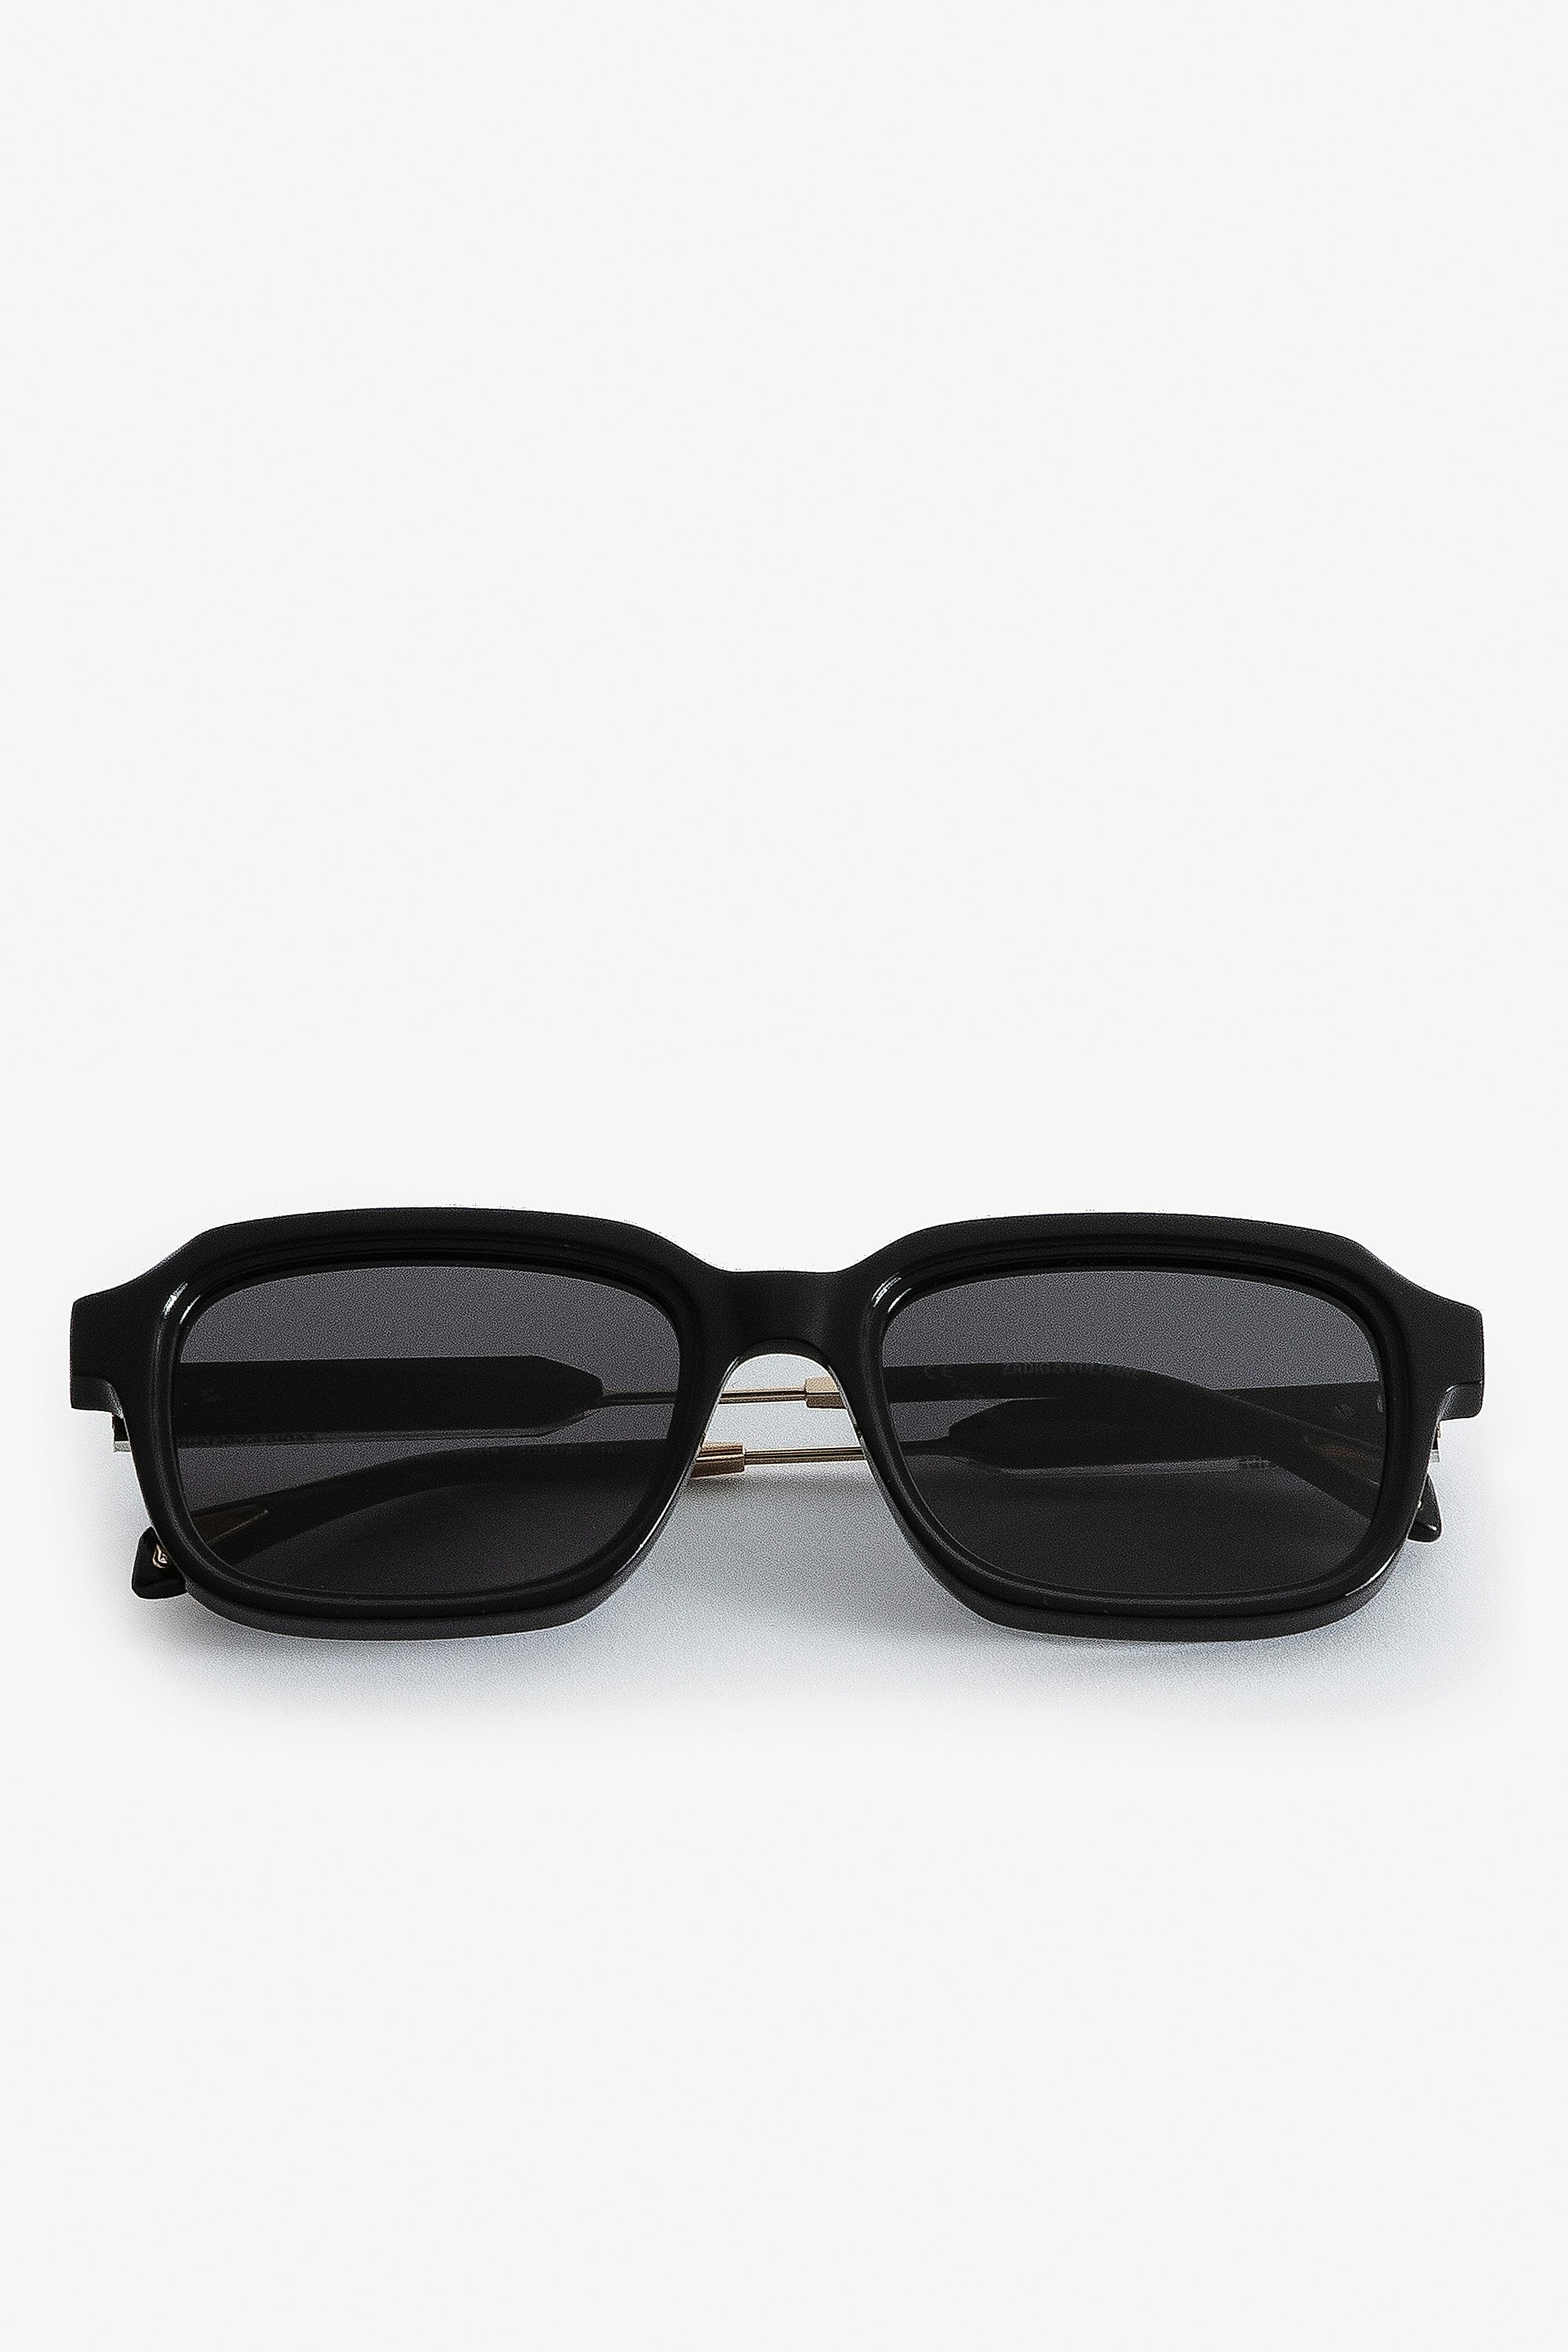 Squared ZV Sunglasses - Square-shaped unisex sunglasses in black acetate.